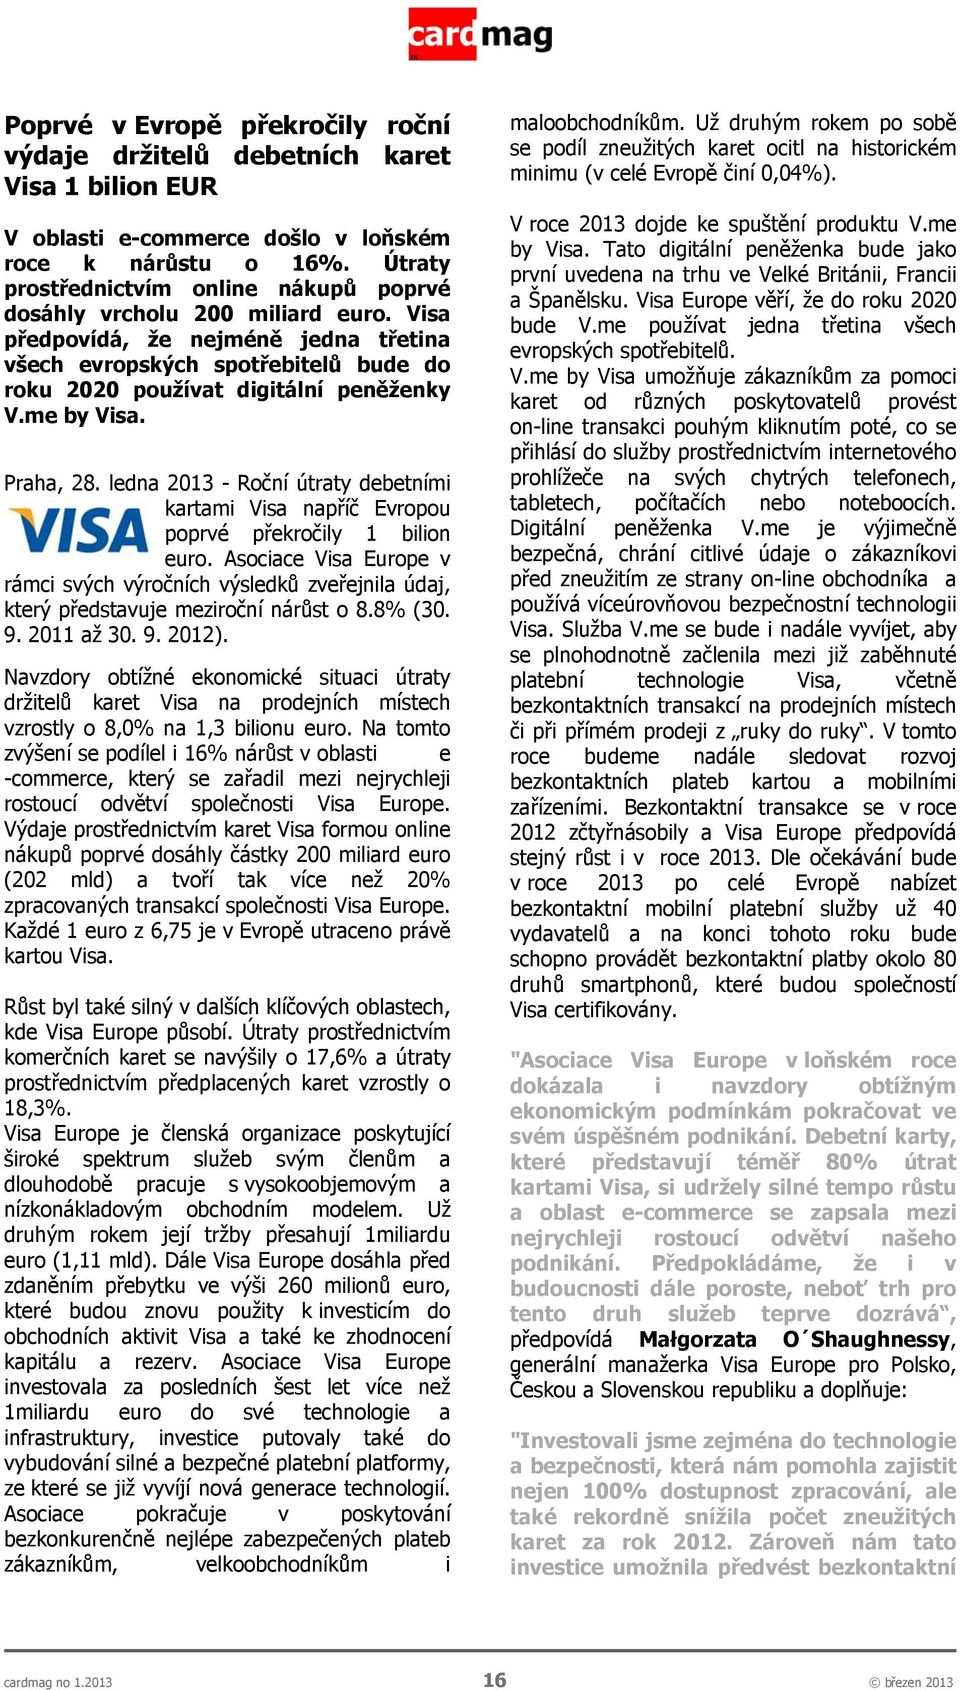 me by Visa. Praha, 28. ledna 2013 - Roční útraty debetními kartami Visa napříč Evropou poprvé překročily 1 bilion euro.